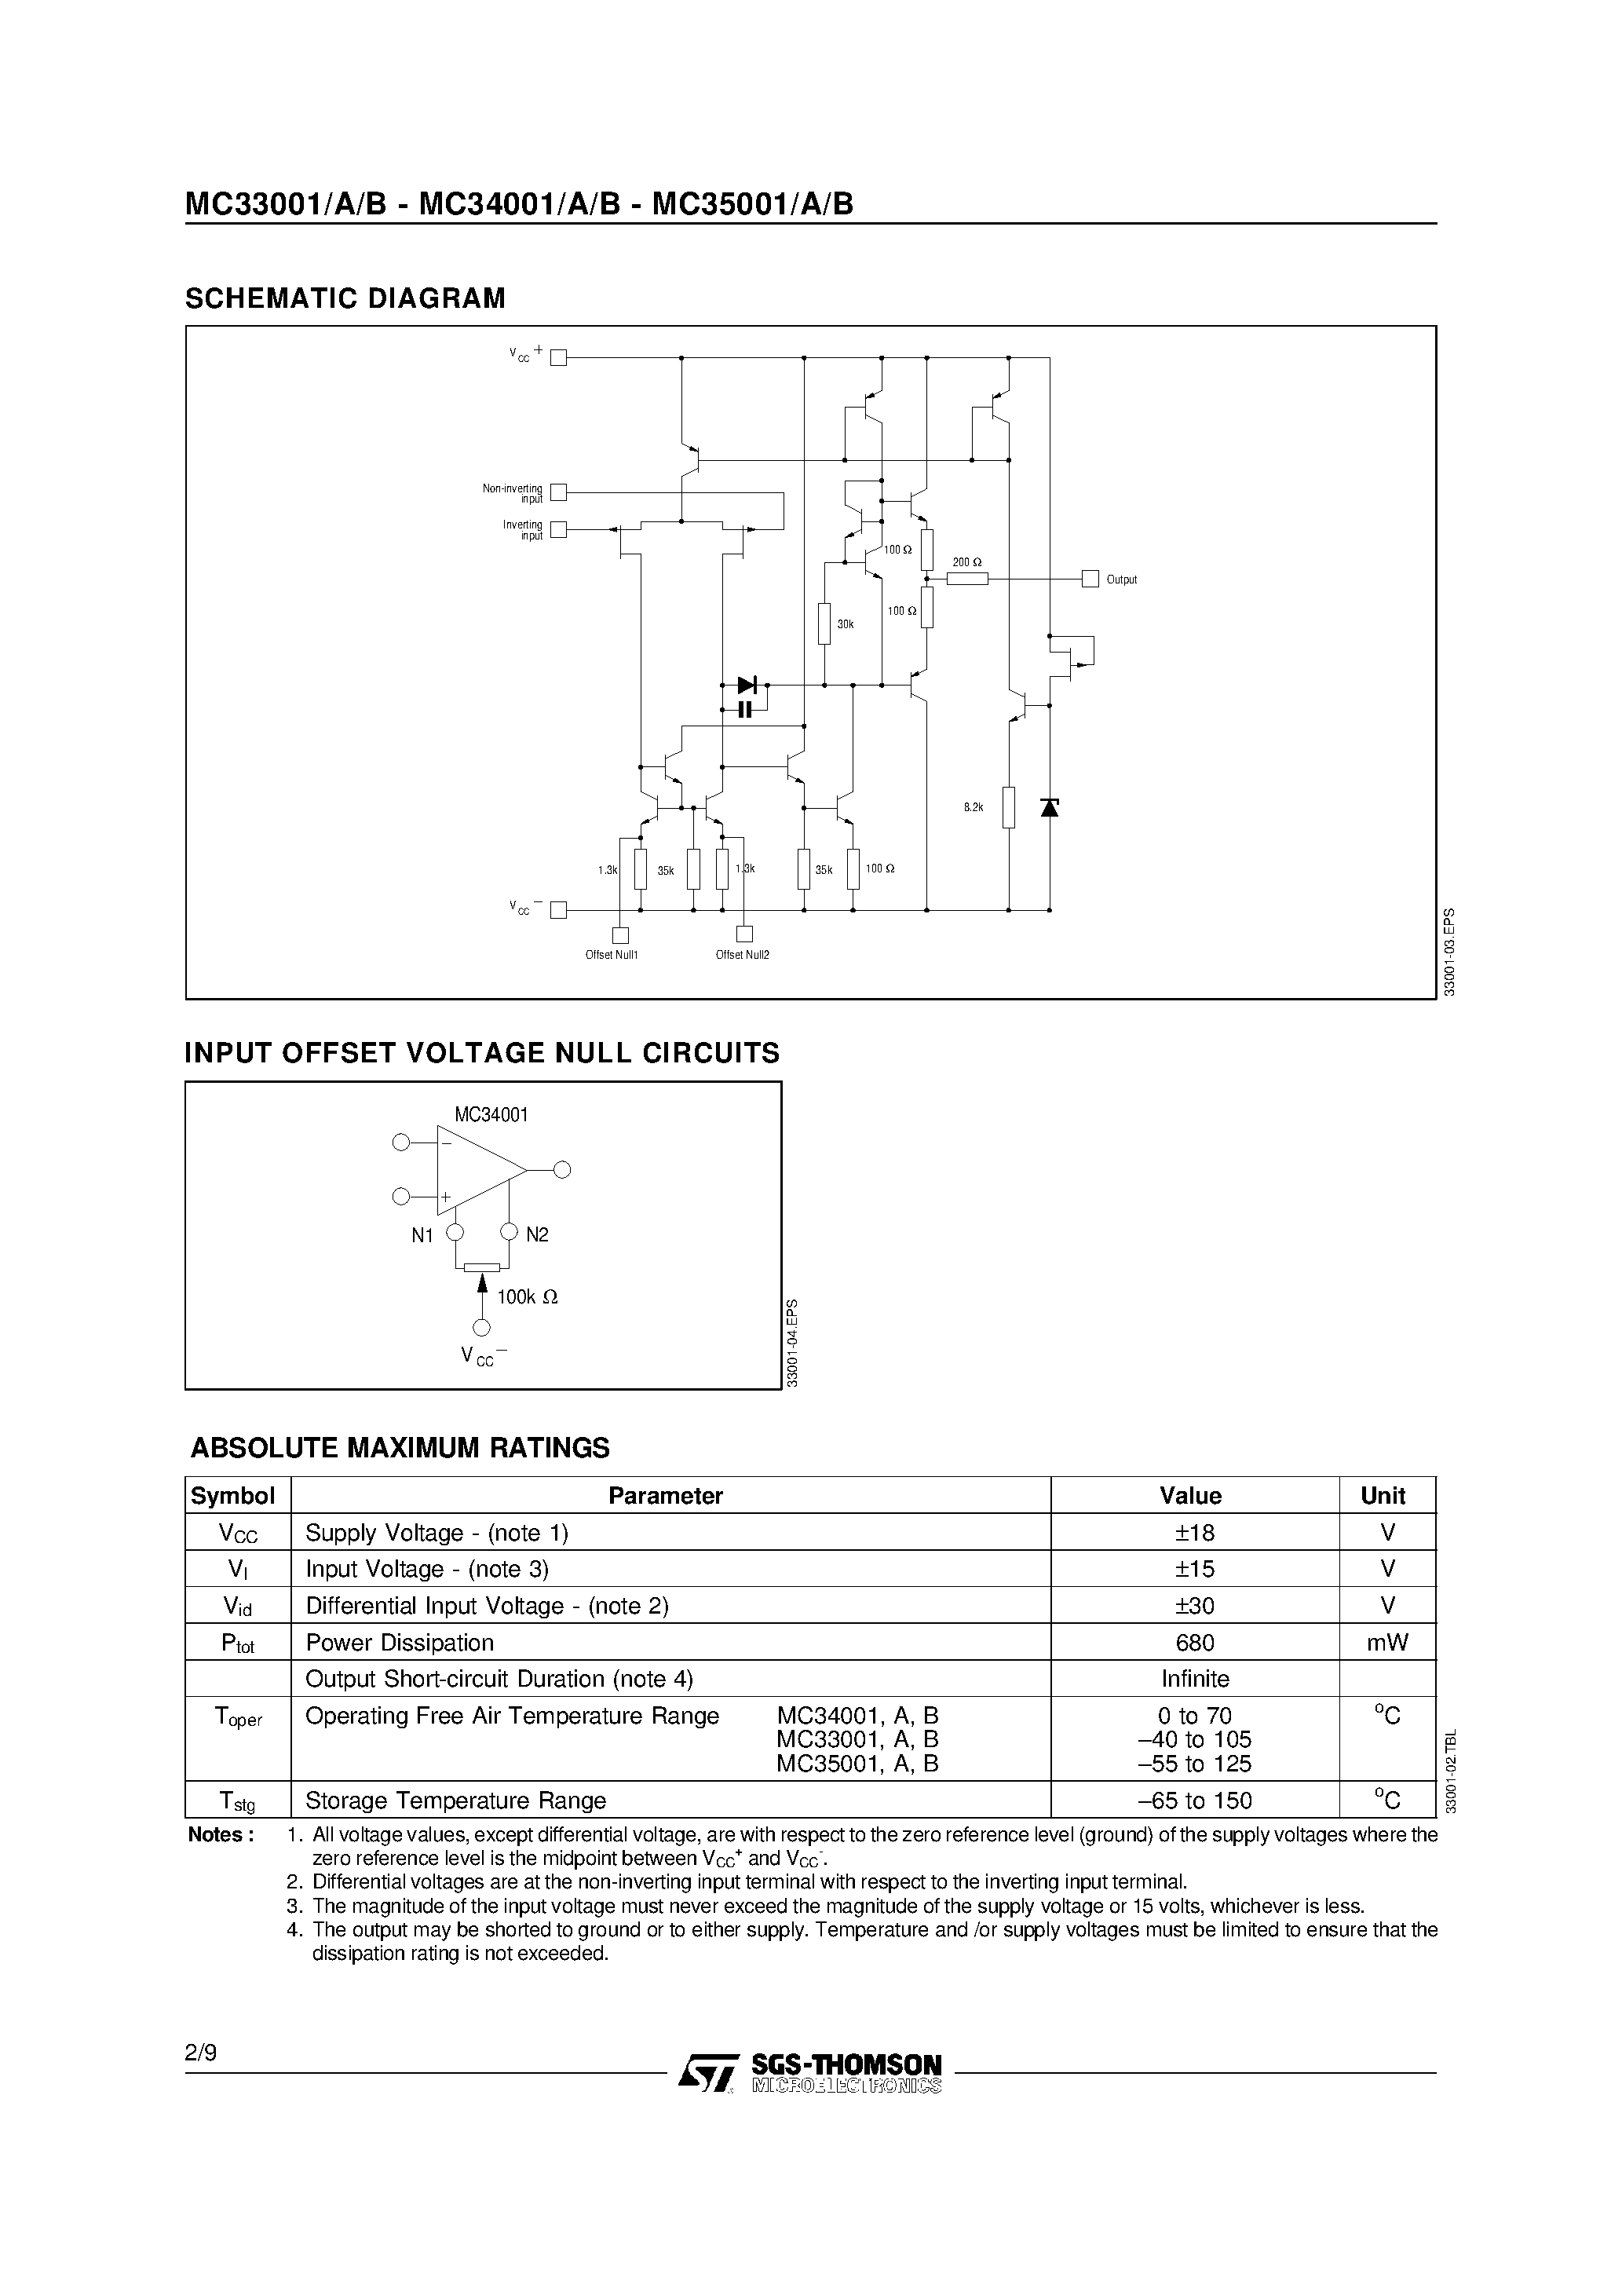 Datasheet MC33001 - (MC33001x - MC35001x) GENERAL PURPOSE SINGLE JEFT OPERATIONAL AMPLIFIERS page 2